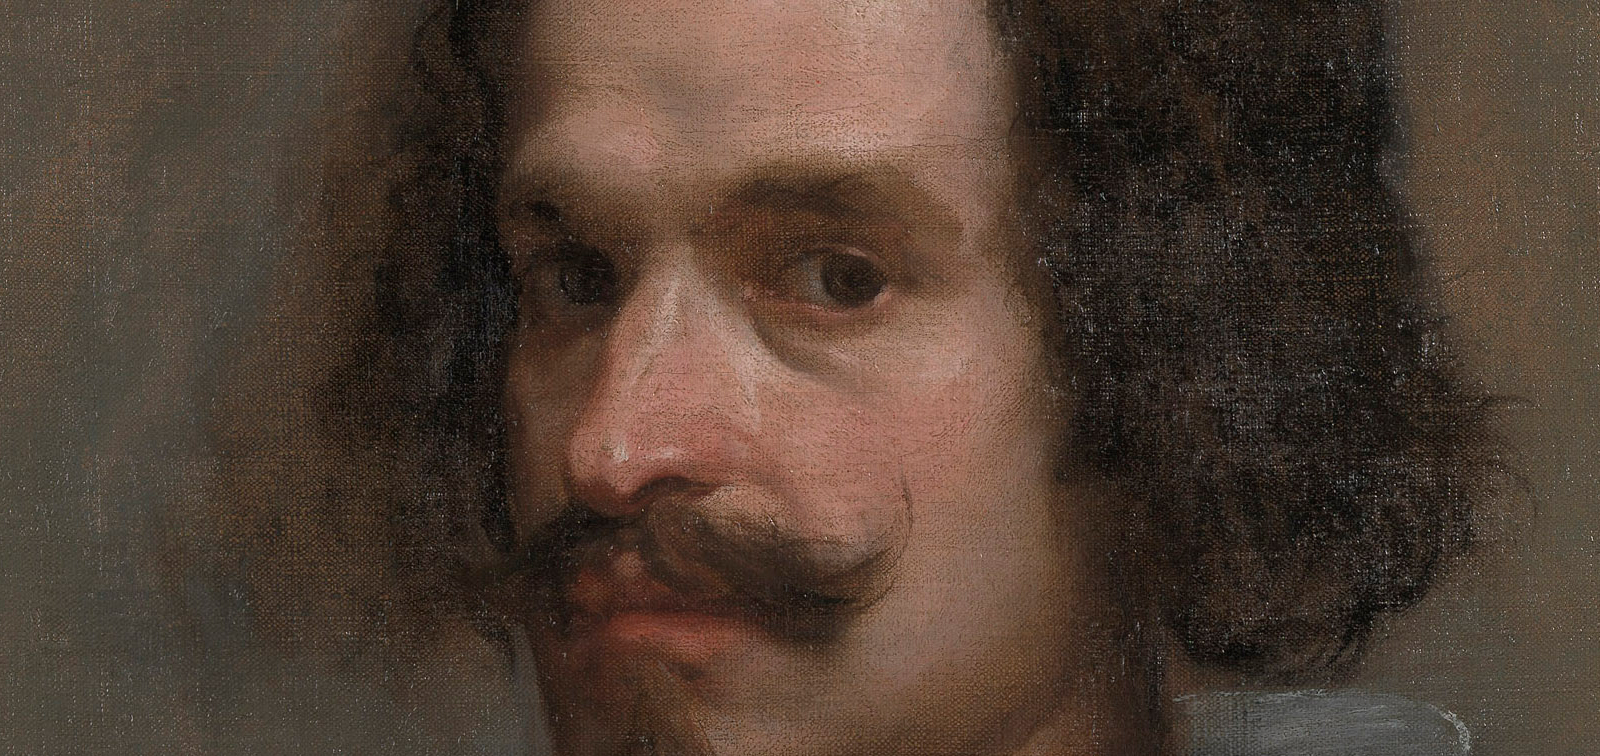 La obra invitada: Retrato de caballero, Velázquez